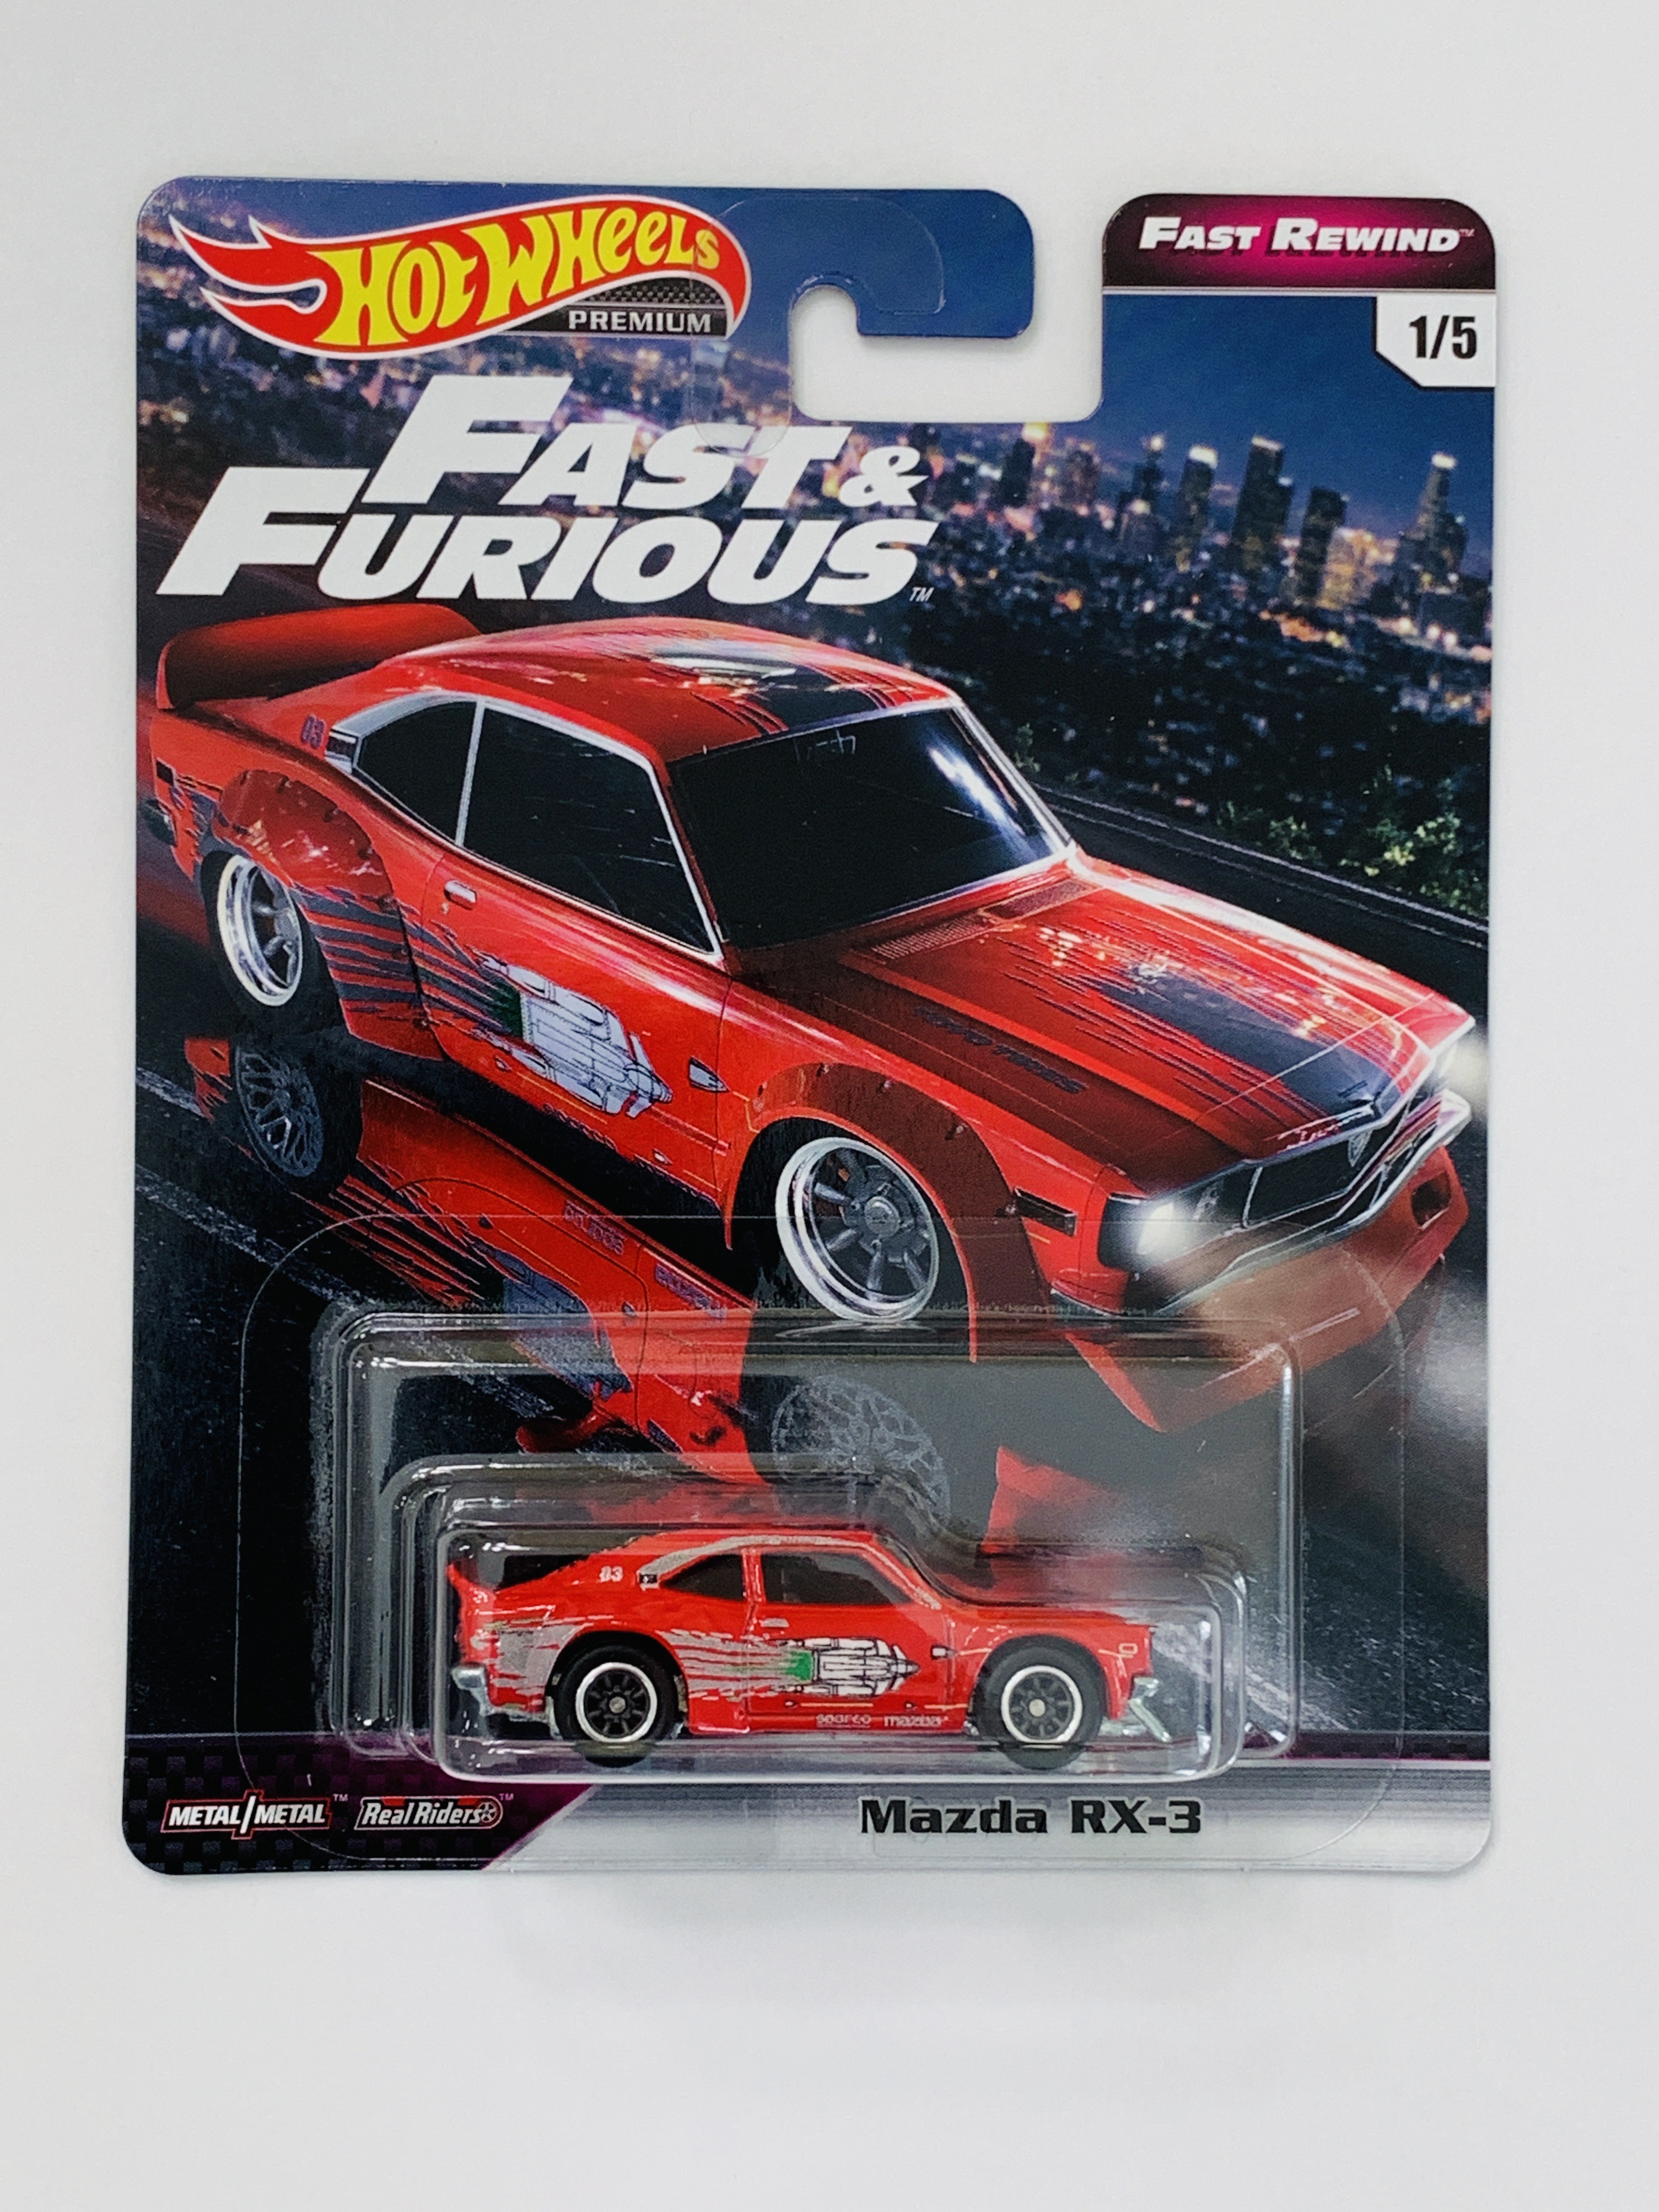 Hot Wheels Premium Fast & Furious Fast Rewind Mazda RX-3